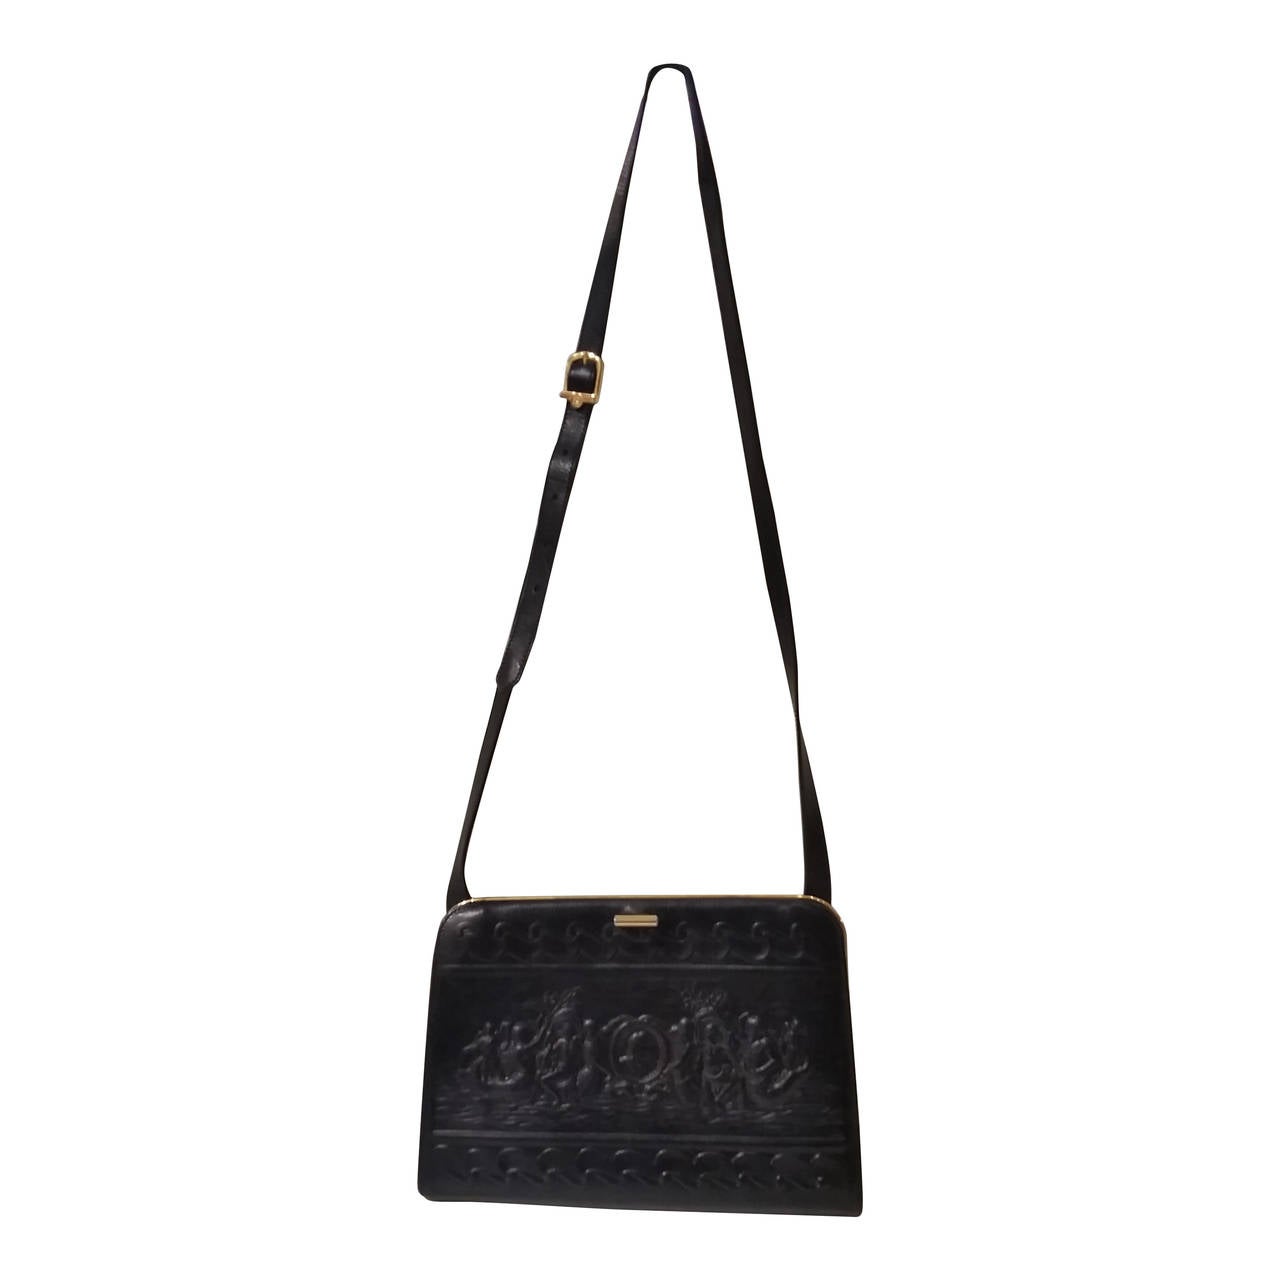 1960s Fendi black Leather shoulder bag